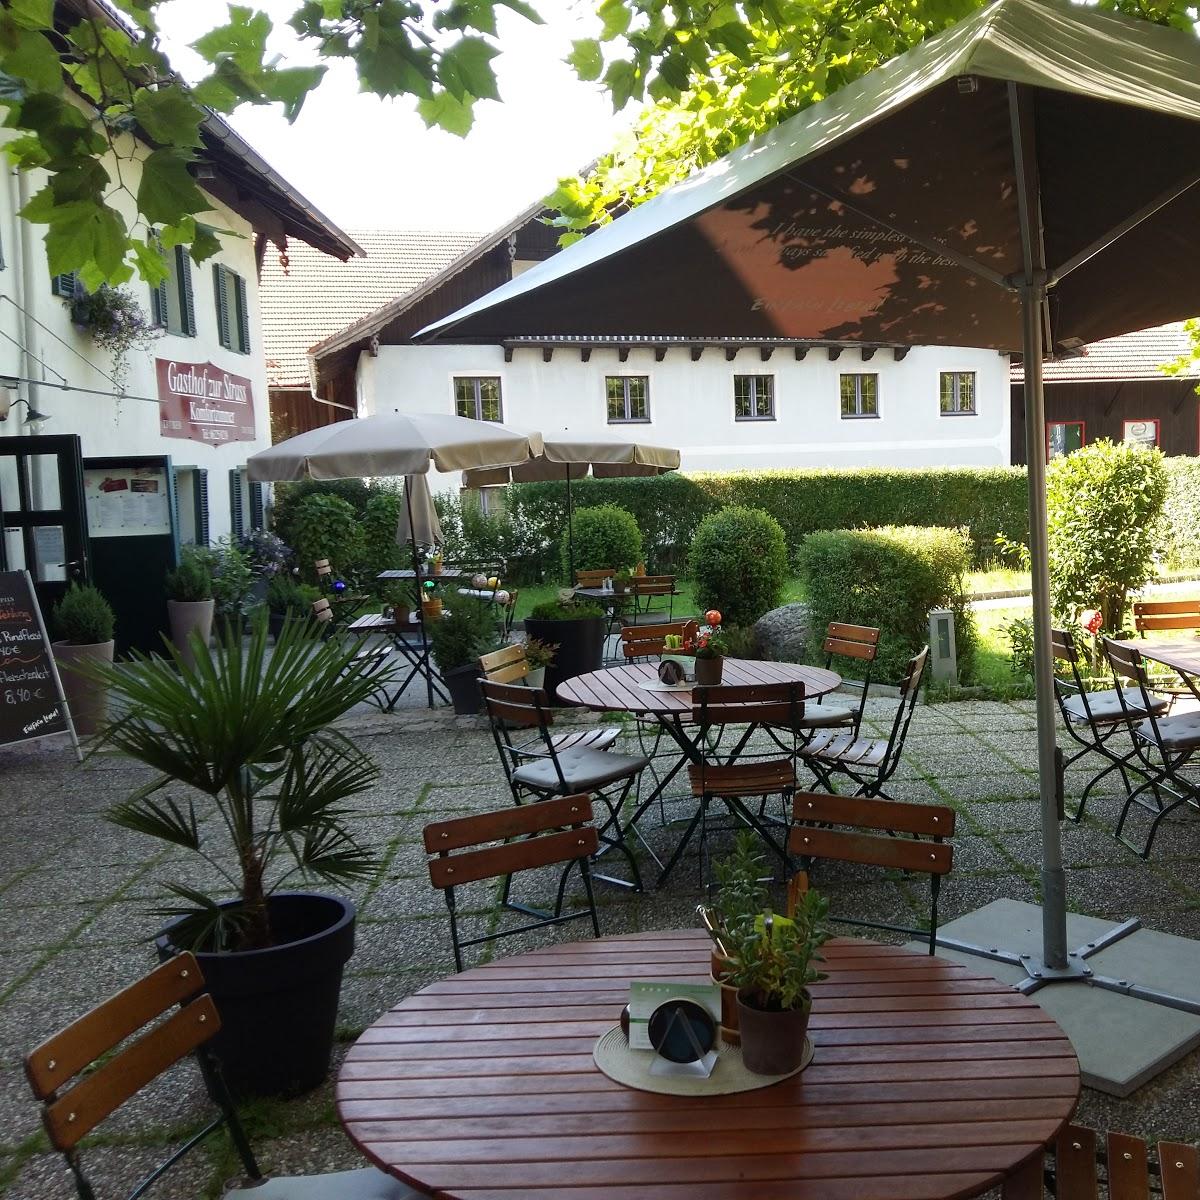 Restaurant "Gasthof zur Strass" in Eugendorf